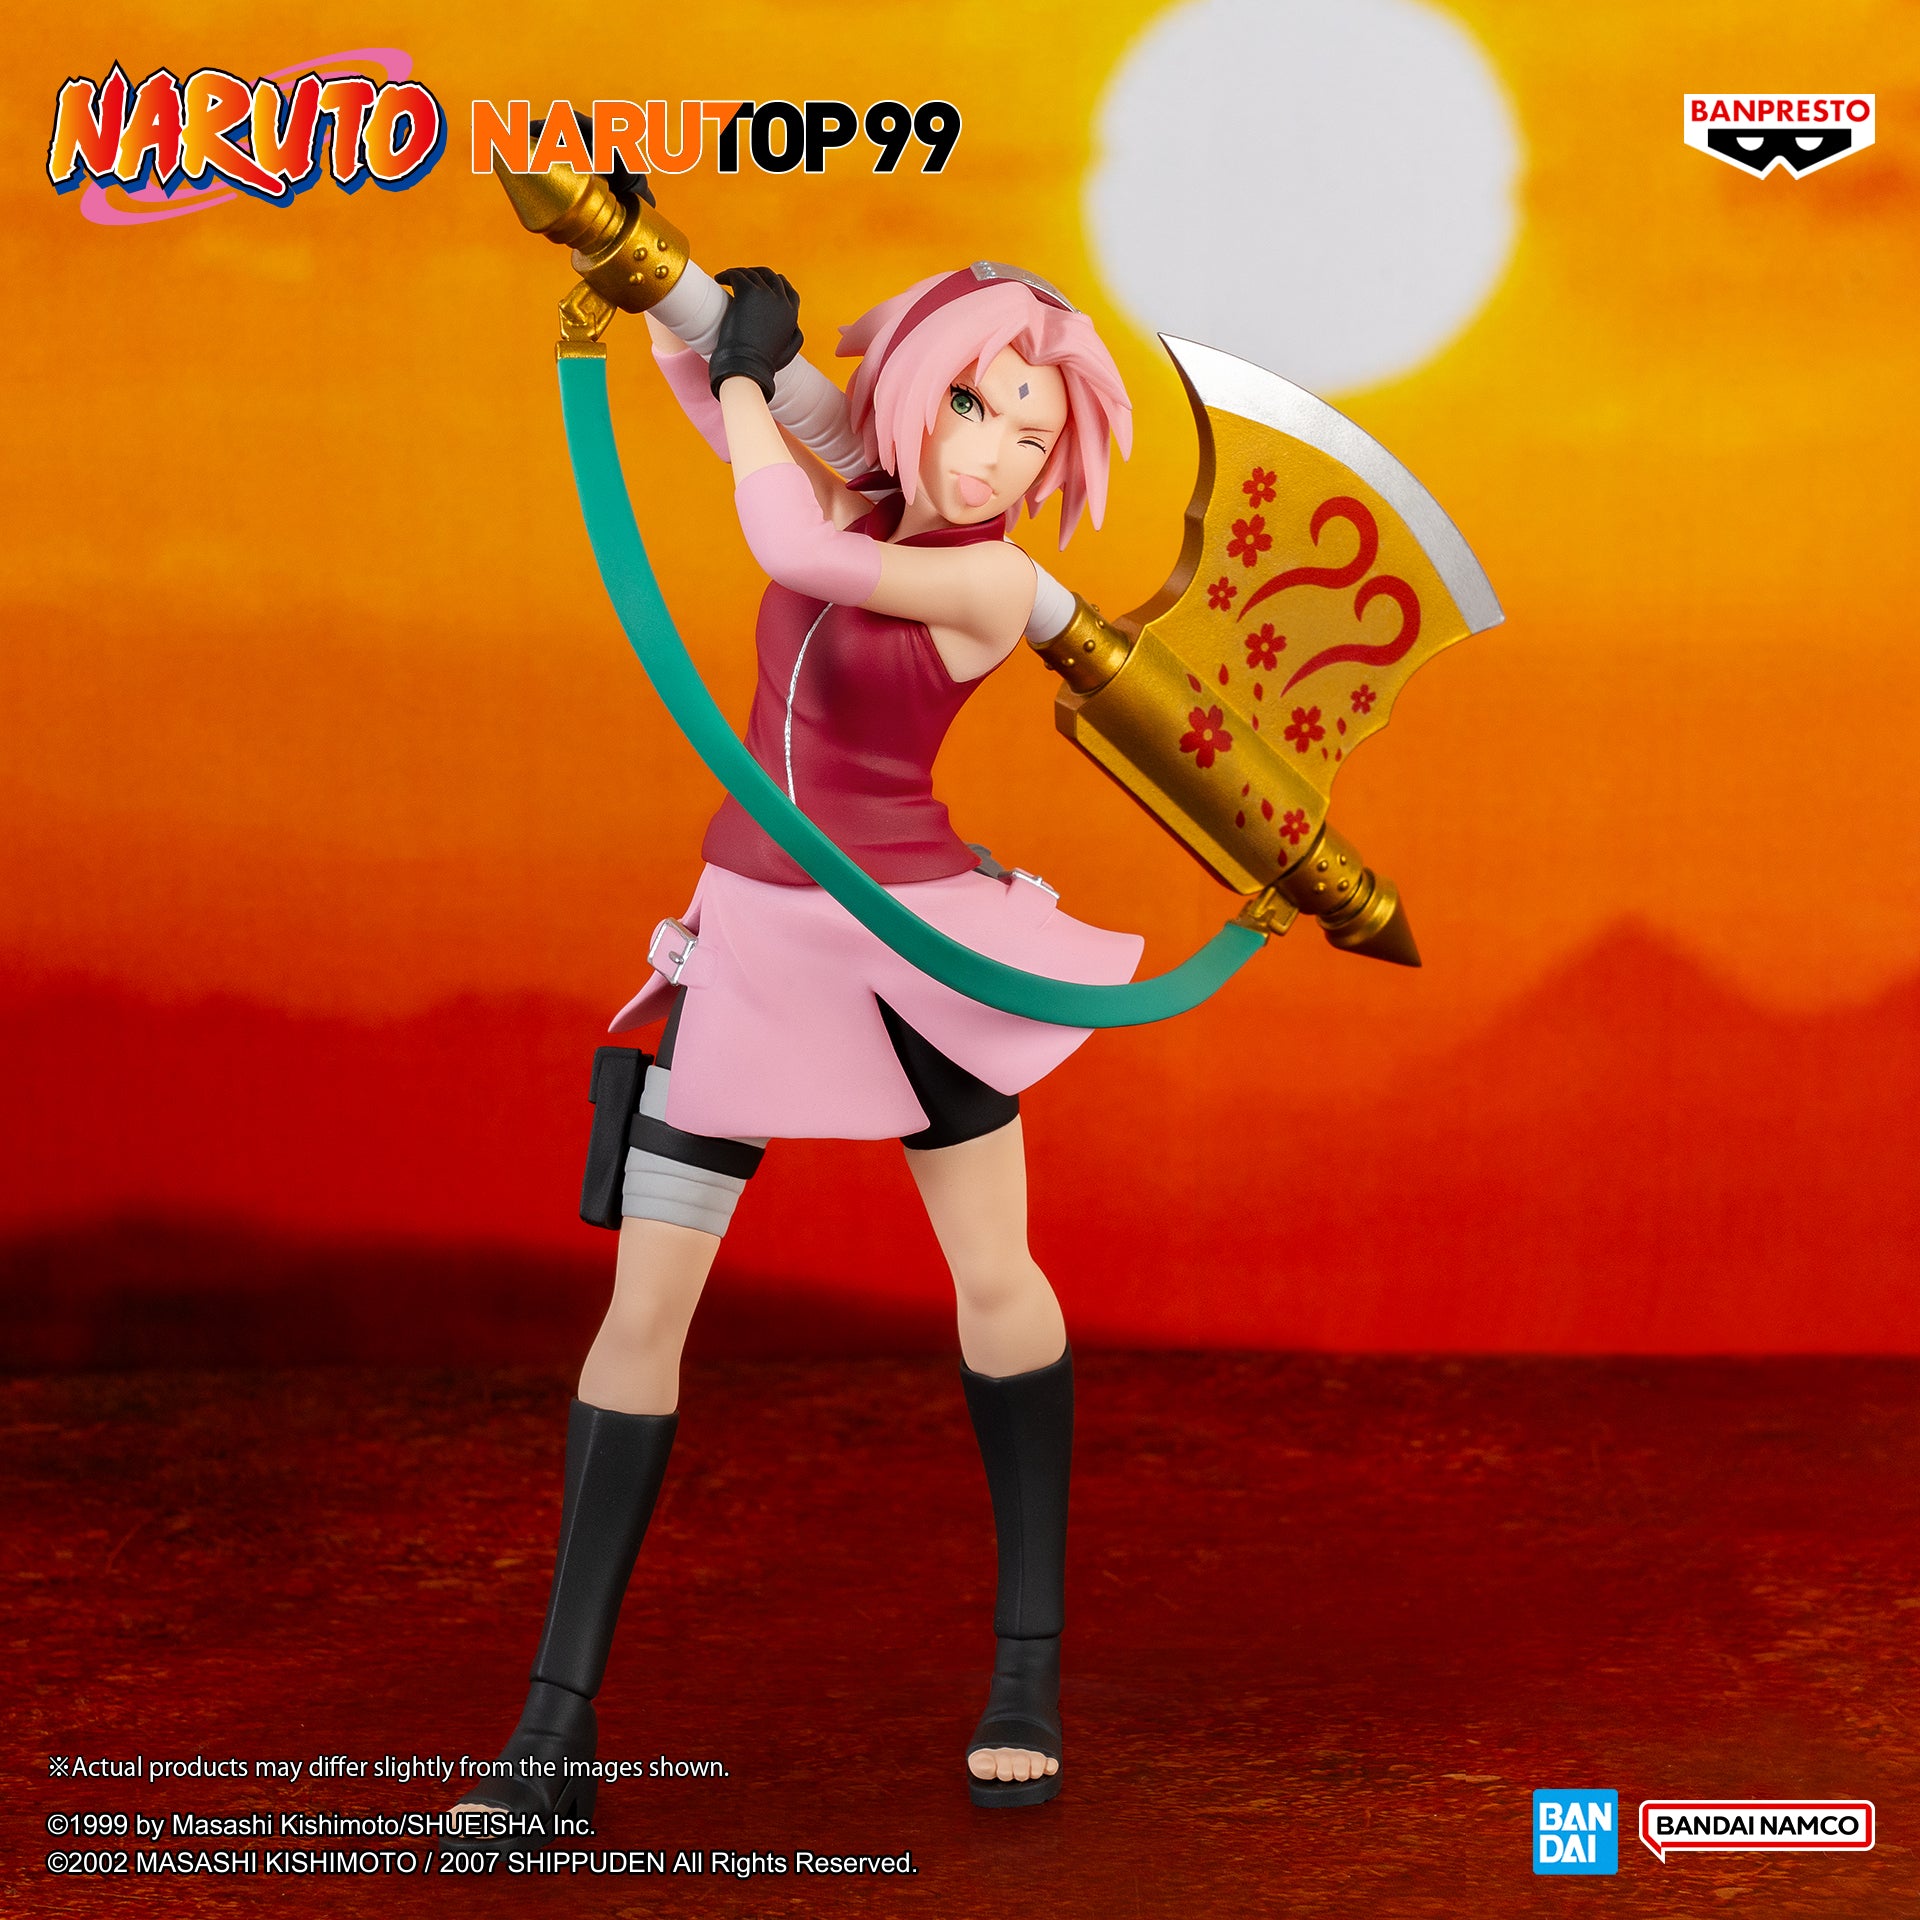 Banpresto: Naruto Narutop99 - Sakura Haruno